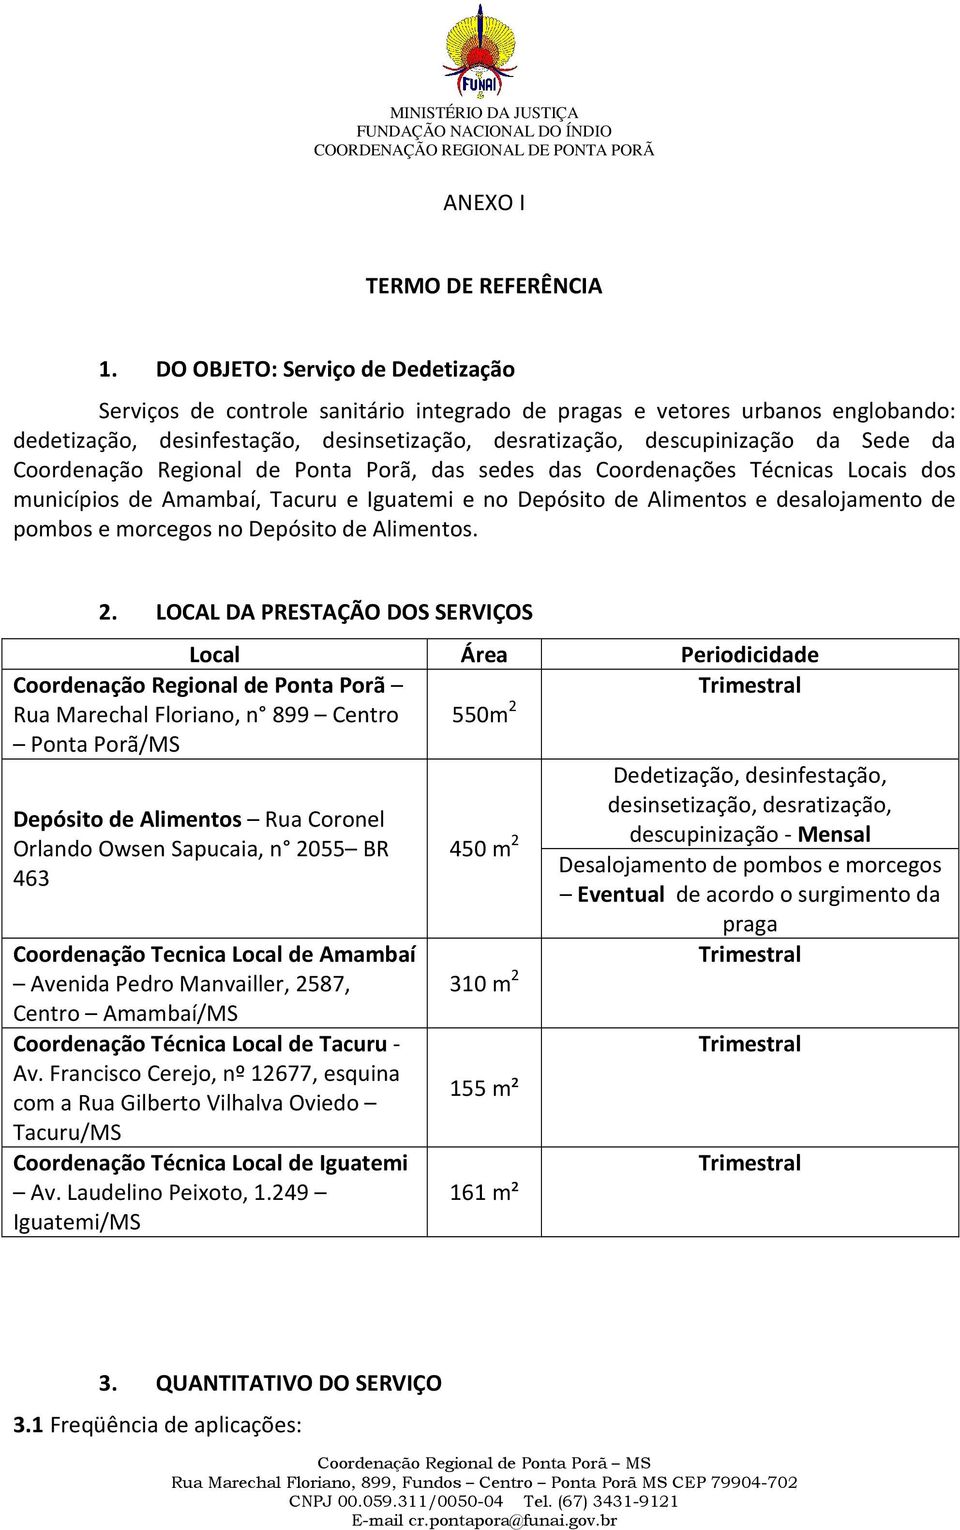 Coordenação Regional de Ponta Porã, das sedes das Coordenações Técnicas Locais dos municípios de Amambaí, Tacuru e Iguatemi e no Depósito de Alimentos e desalojamento de pombos e morcegos no Depósito